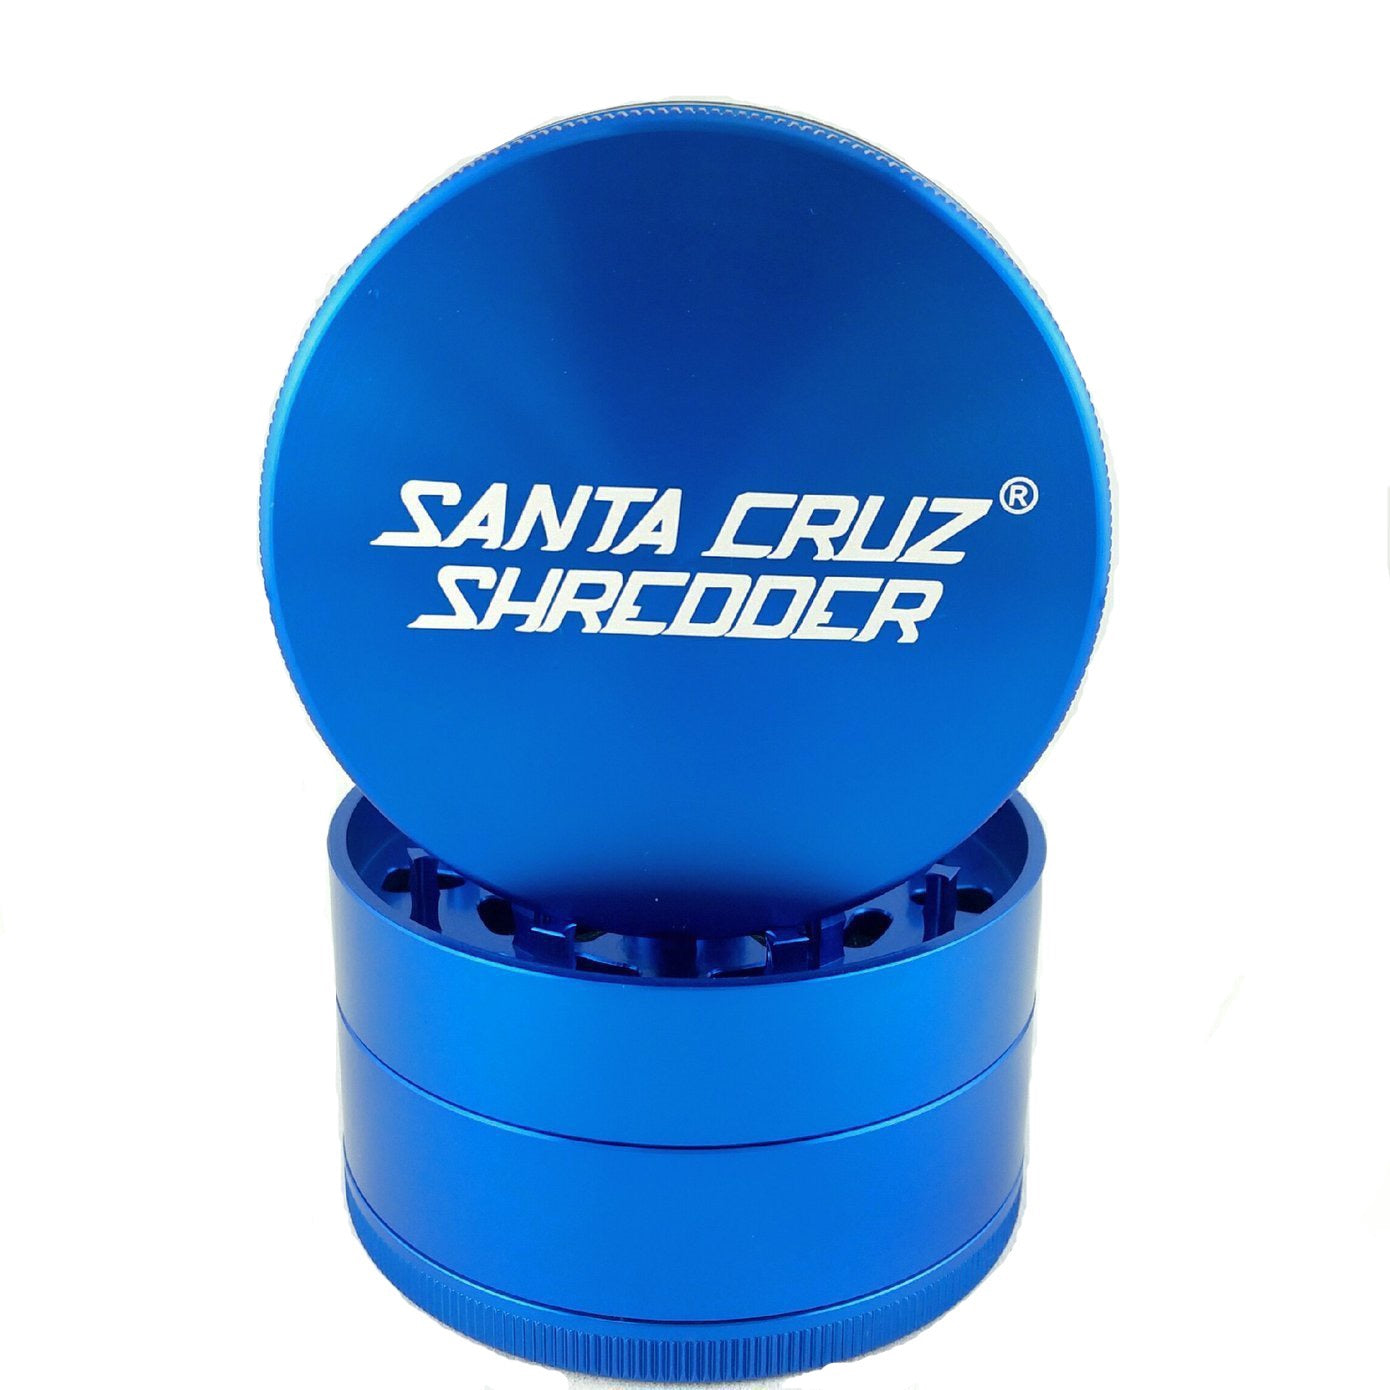 Santa Cruz Shredder Large 4 Piece Grinder (Blue) show variants